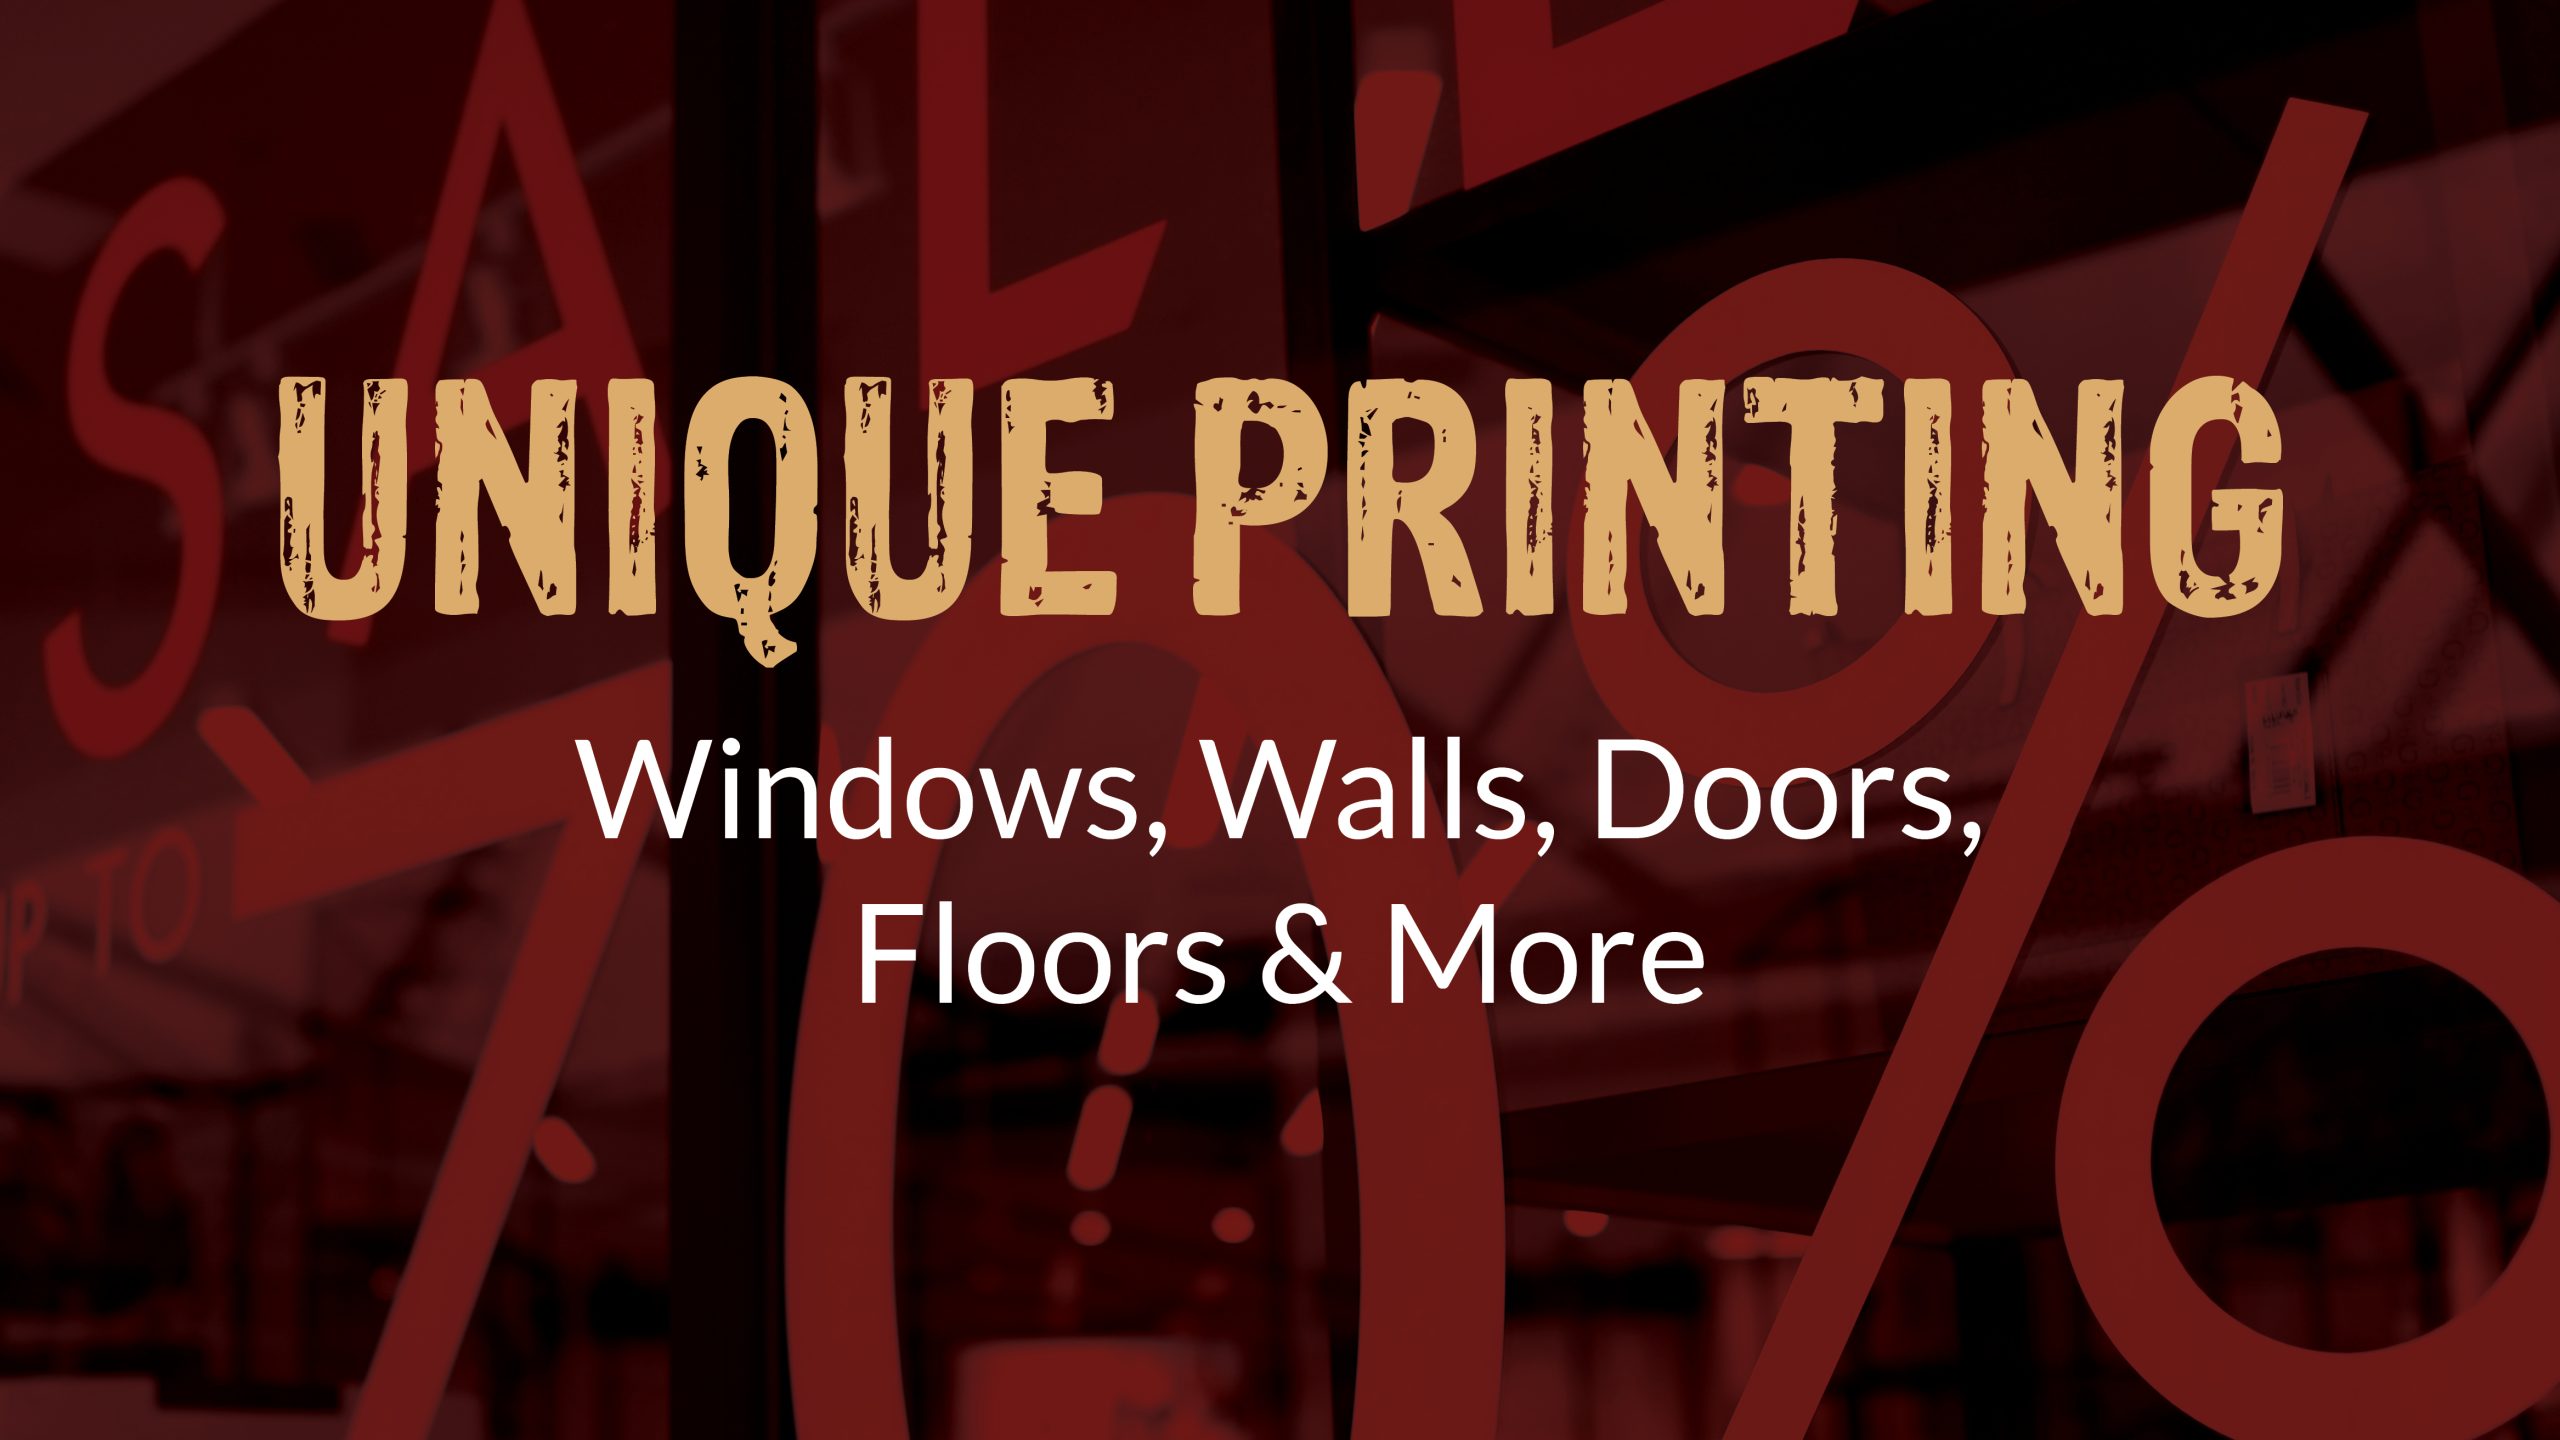 Unique Printing: Windows, Walls, Doors, Floors & More